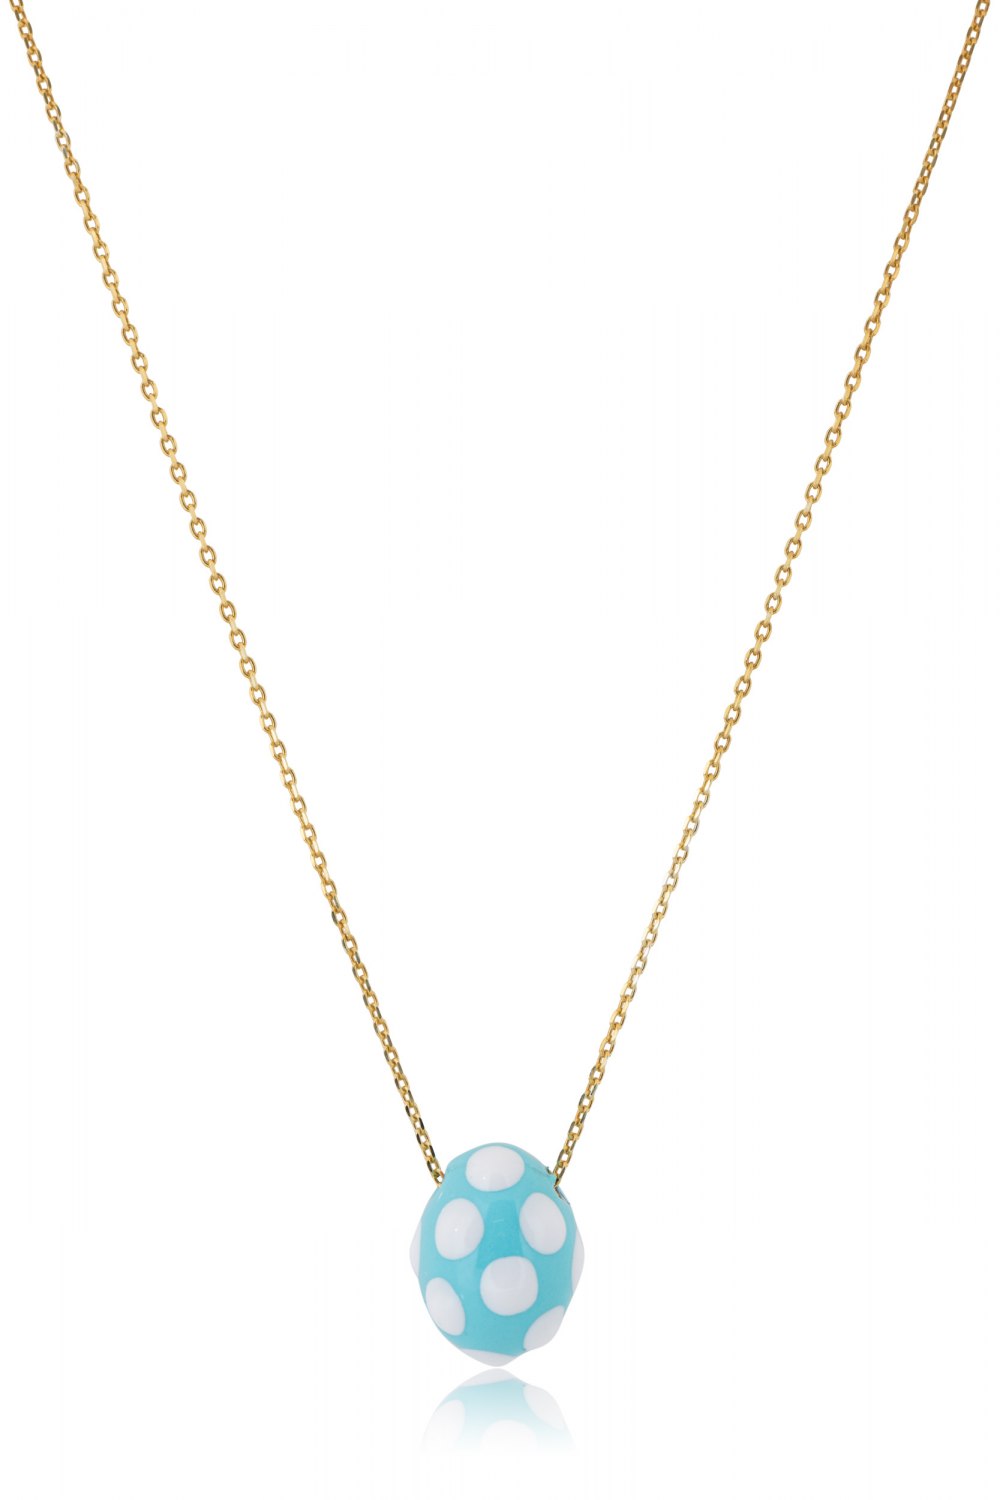 KESSARIS - Light Blue Polka-Dot Easter Egg Pendant Necklace